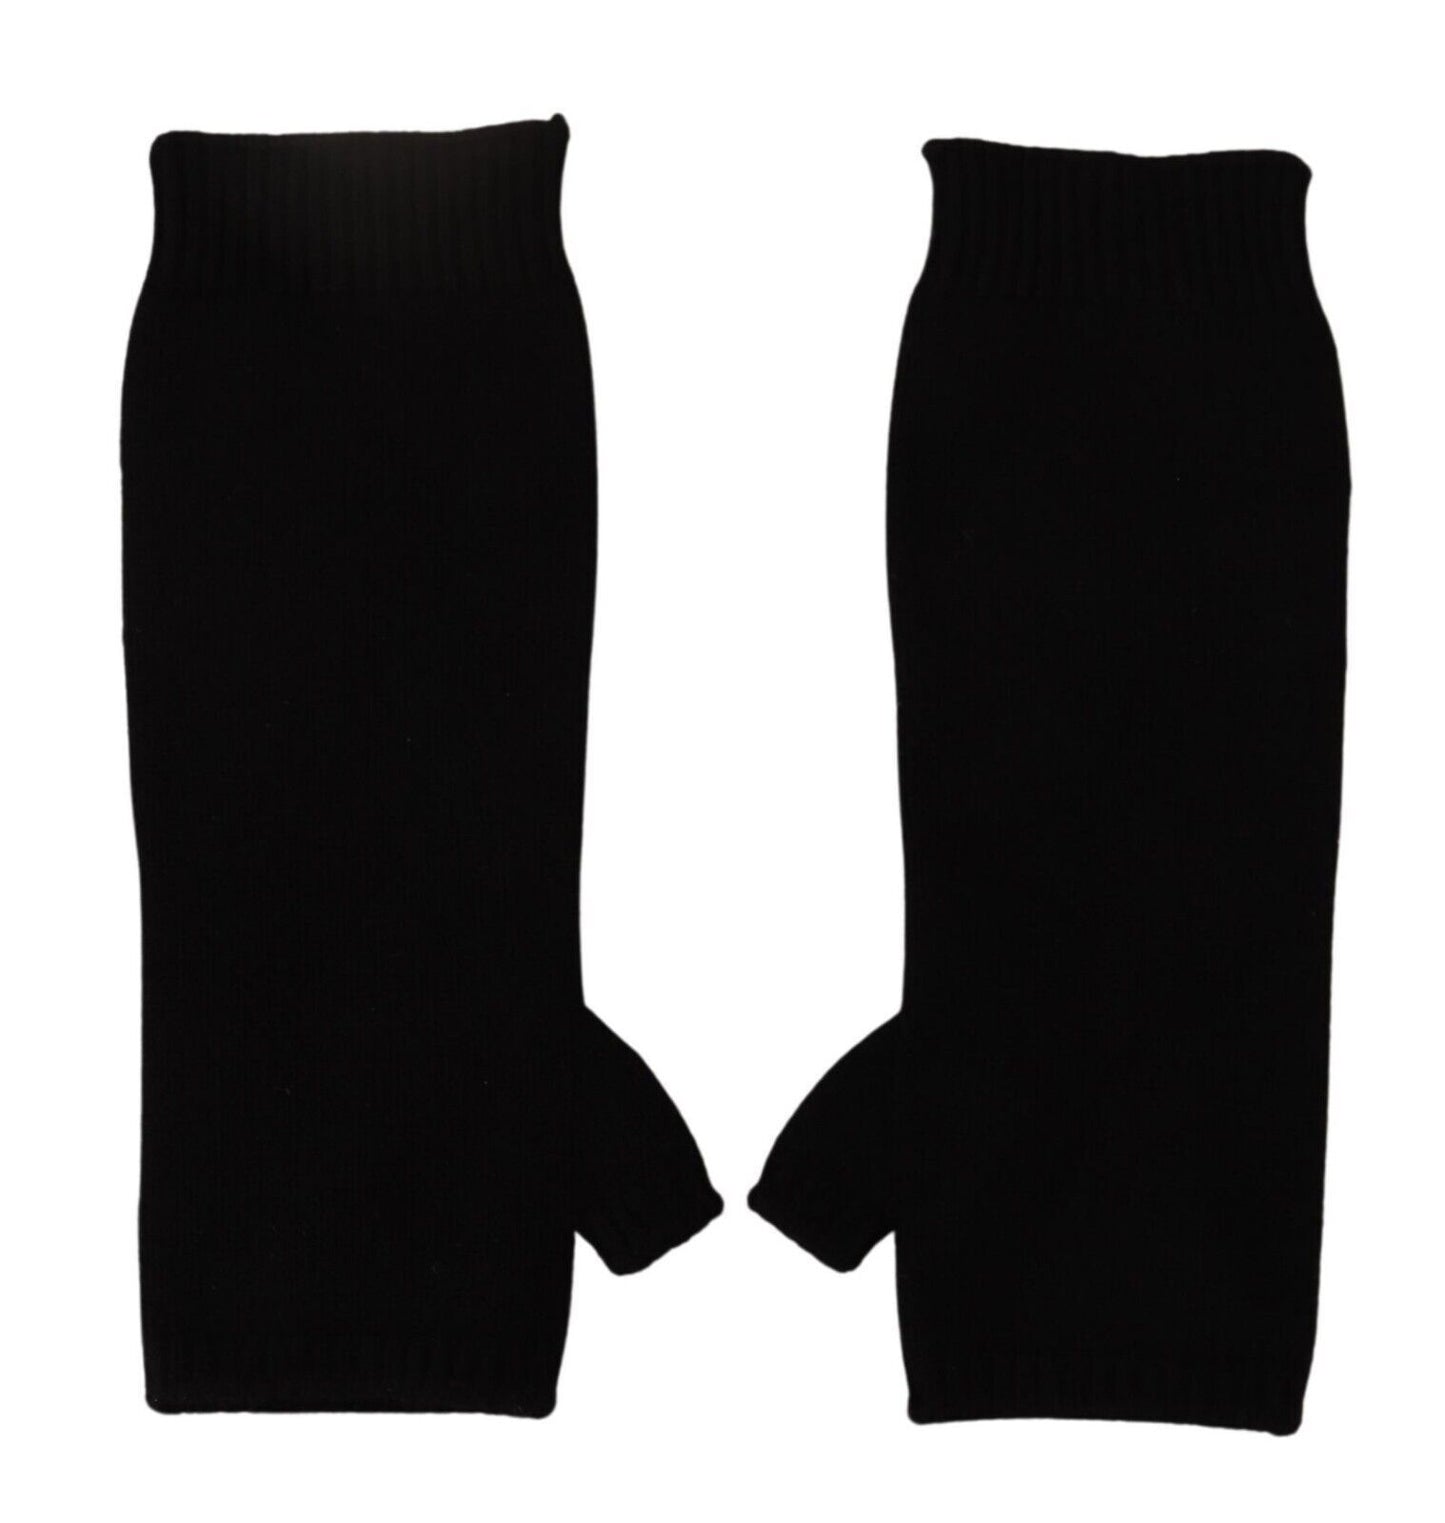 Elegant Black Cashmere Fingerless Gloves